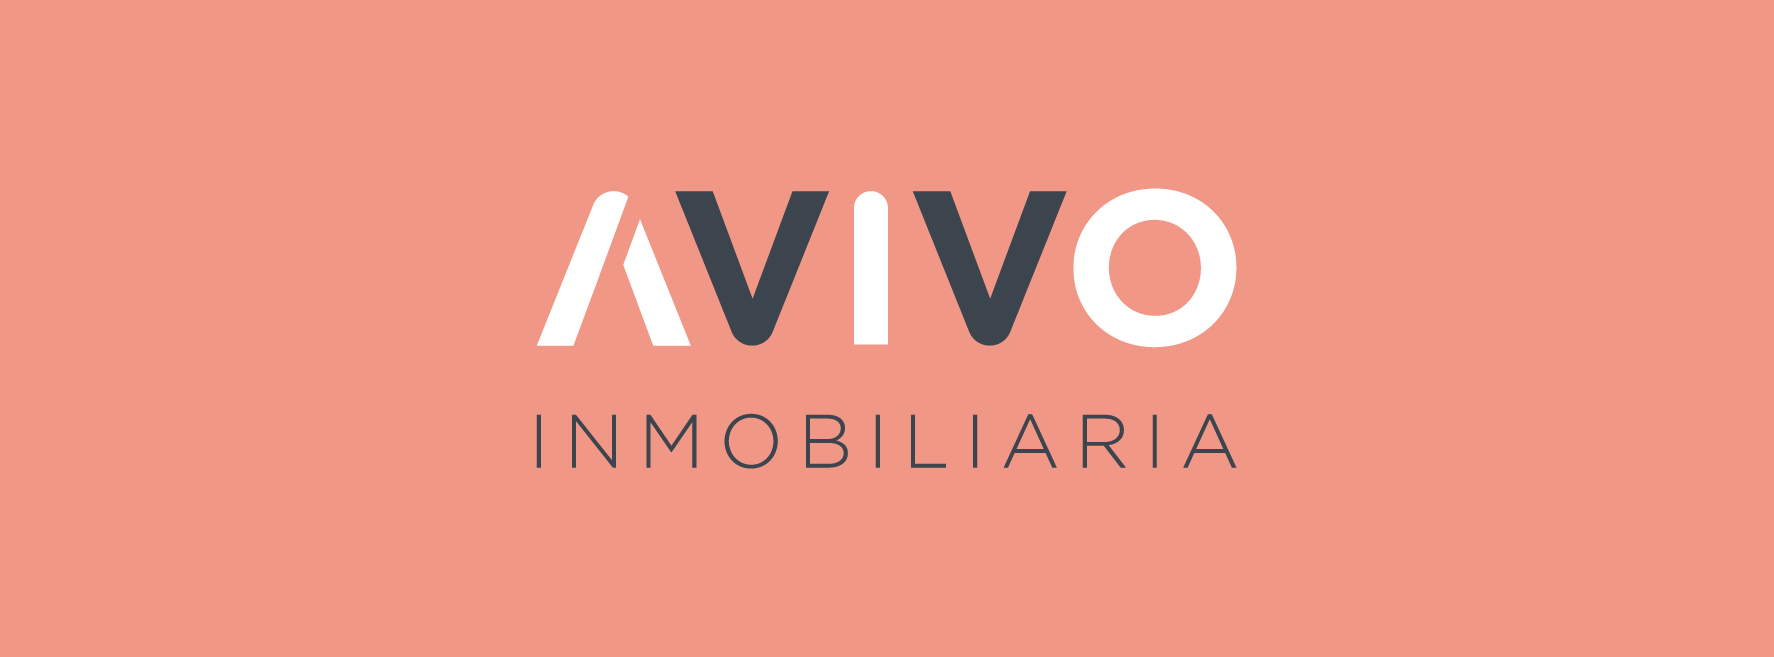 new logo avivo